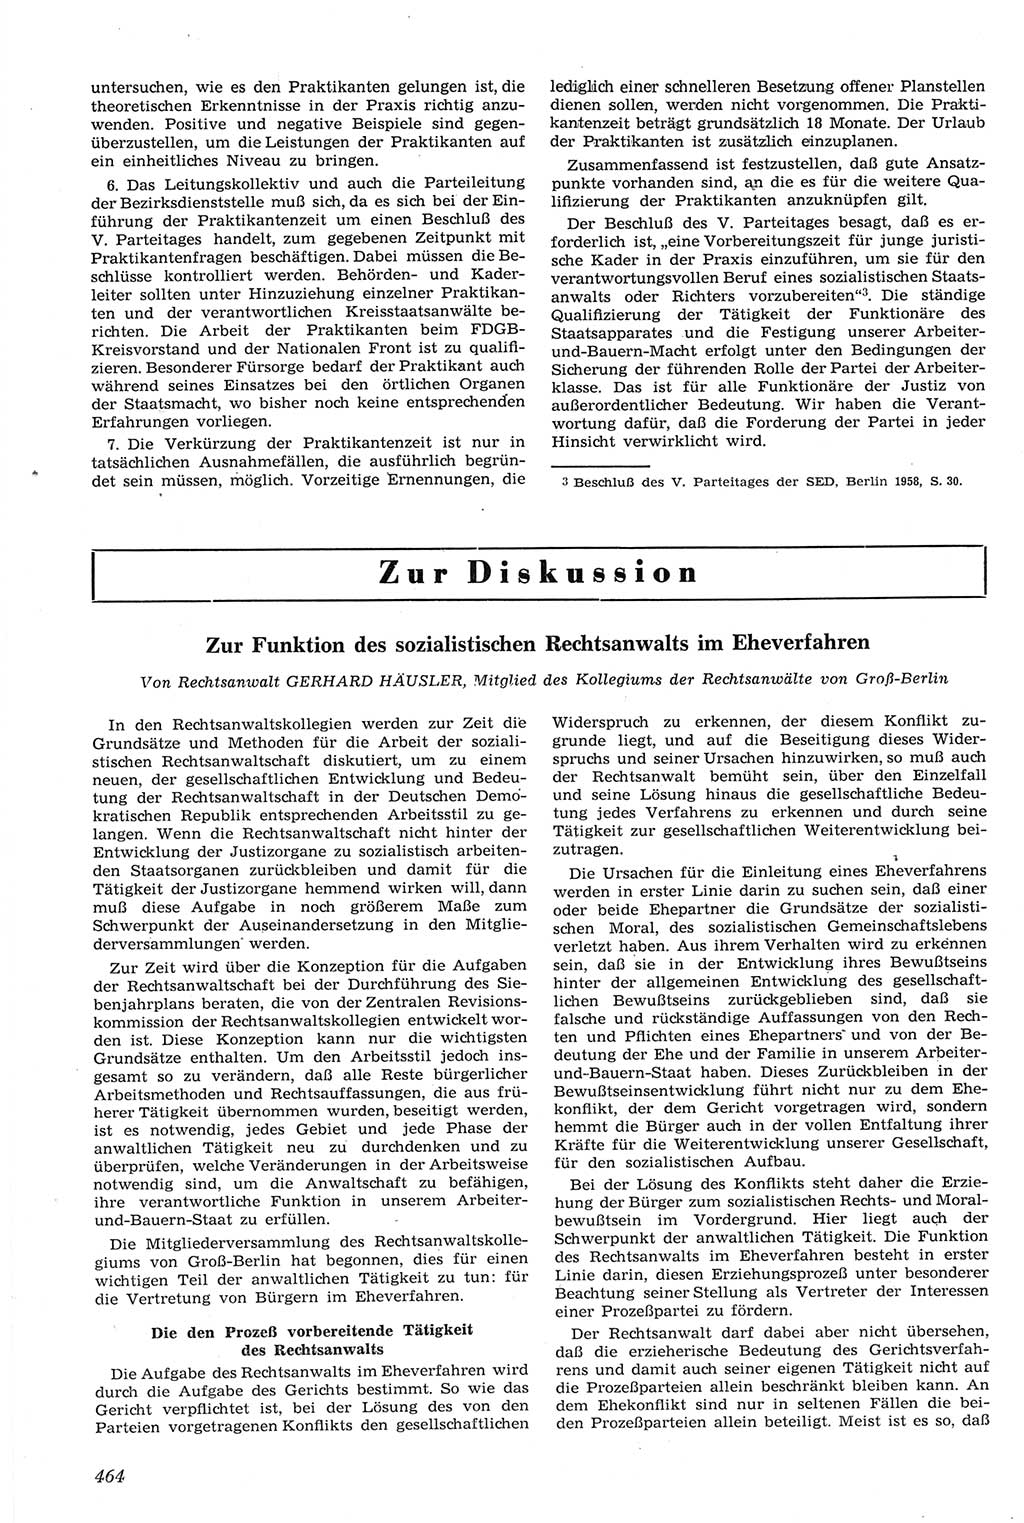 Neue Justiz (NJ), Zeitschrift für Recht und Rechtswissenschaft [Deutsche Demokratische Republik (DDR)], 14. Jahrgang 1960, Seite 464 (NJ DDR 1960, S. 464)